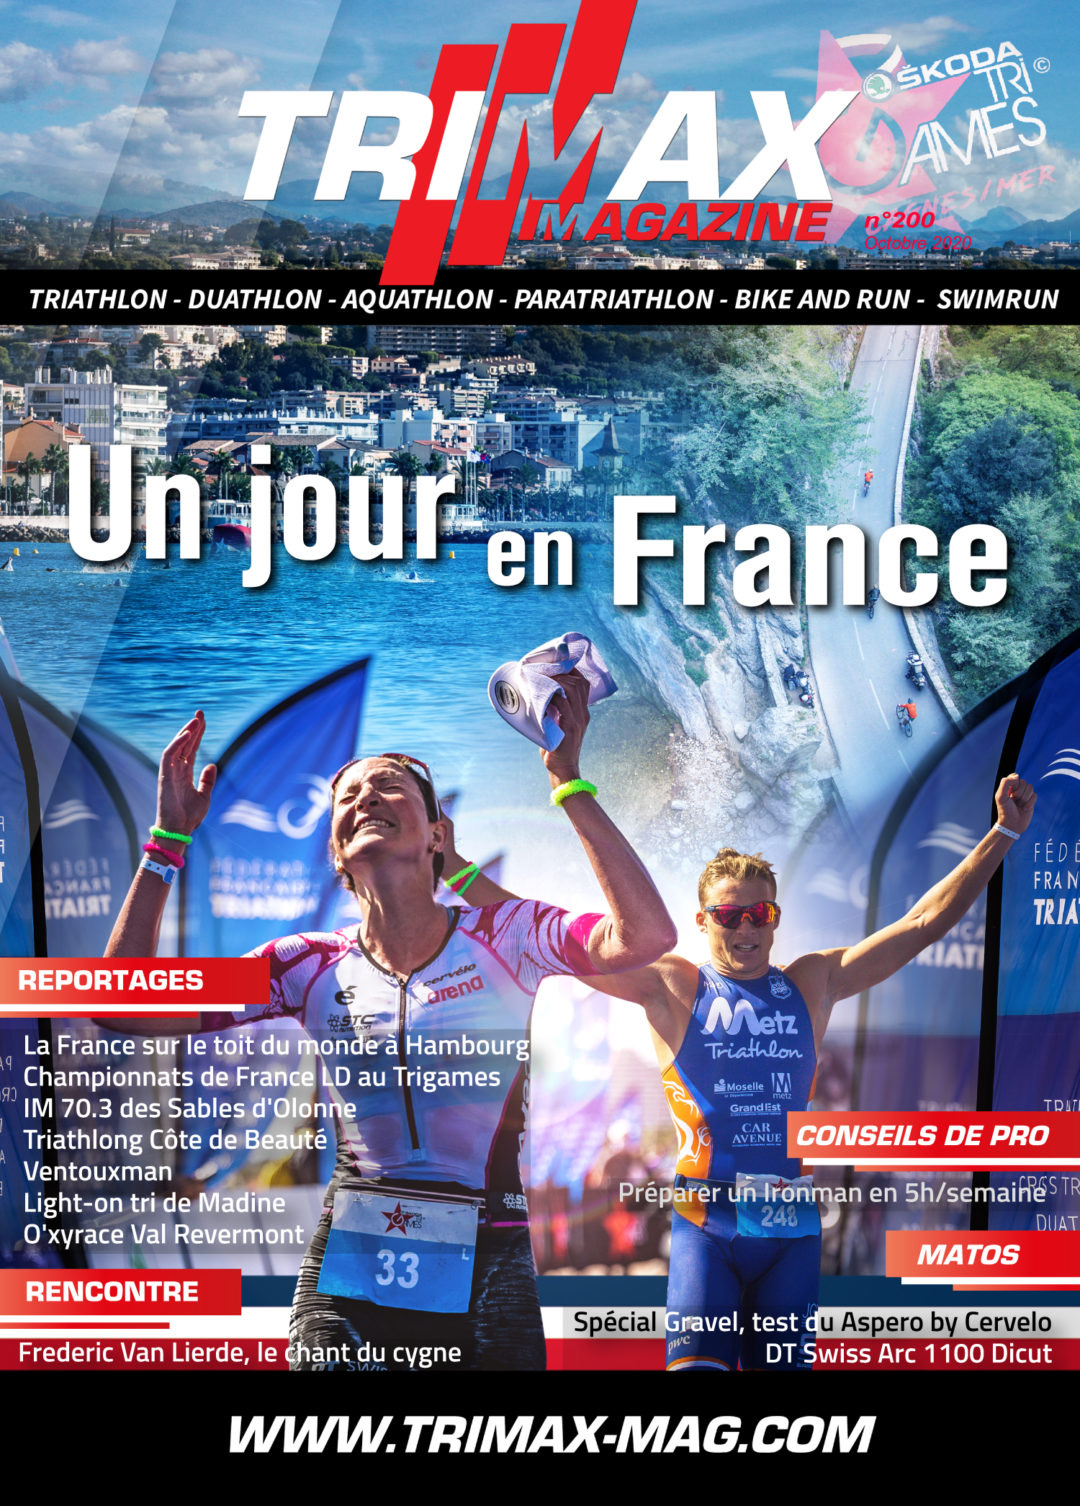 Cet article écrit par Jean-Baptiste Wiroth - PhD, a été publié dans le magazine TriMax Triathlon (n°200).